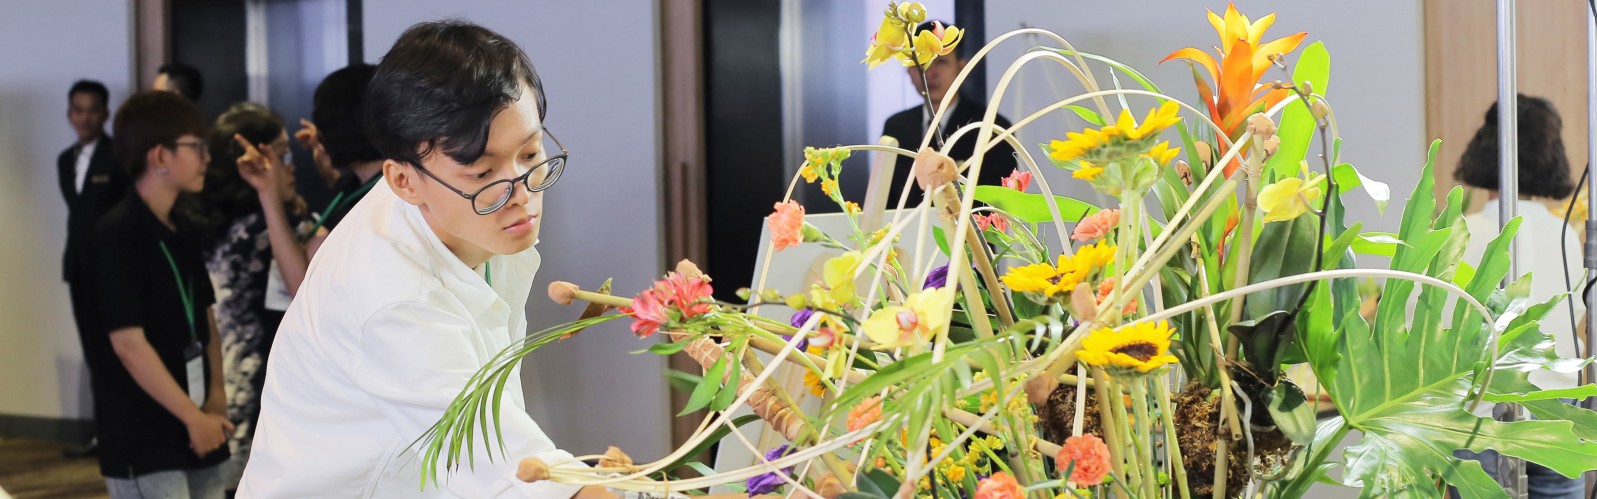 Đã tìm ra Nhà Vô Địch Việt Nam tham dự cuộc thi “Cắm hoa quốc tế Hasfarm tại Trung Quốc”